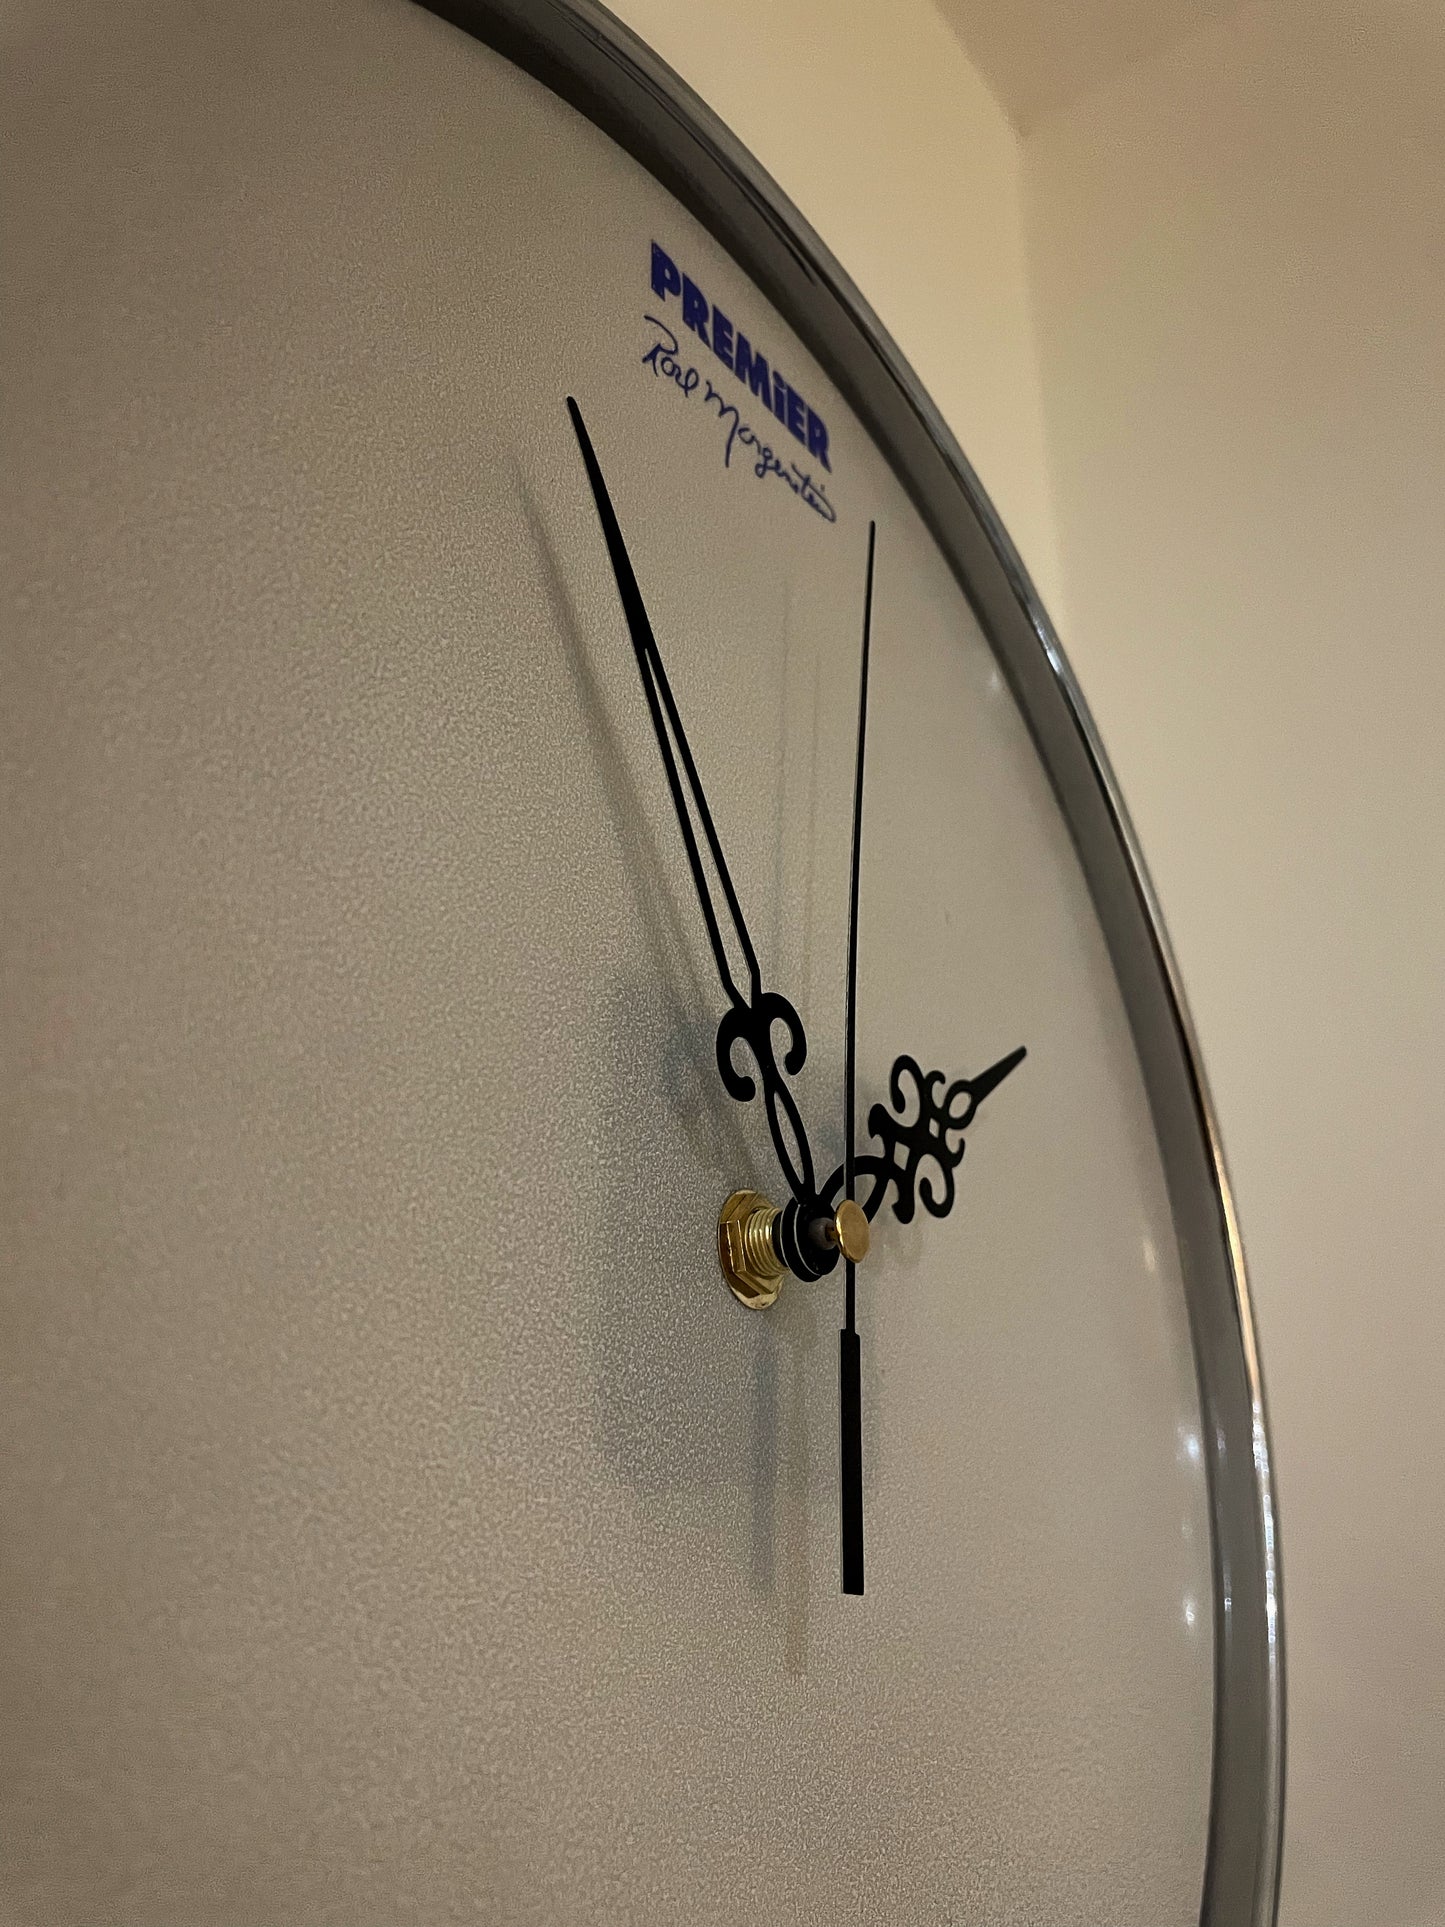 Premier Drum Clock / Wall Mounted 12” Drum Clock / Rustic / Upcycled Drum / Drum Kit